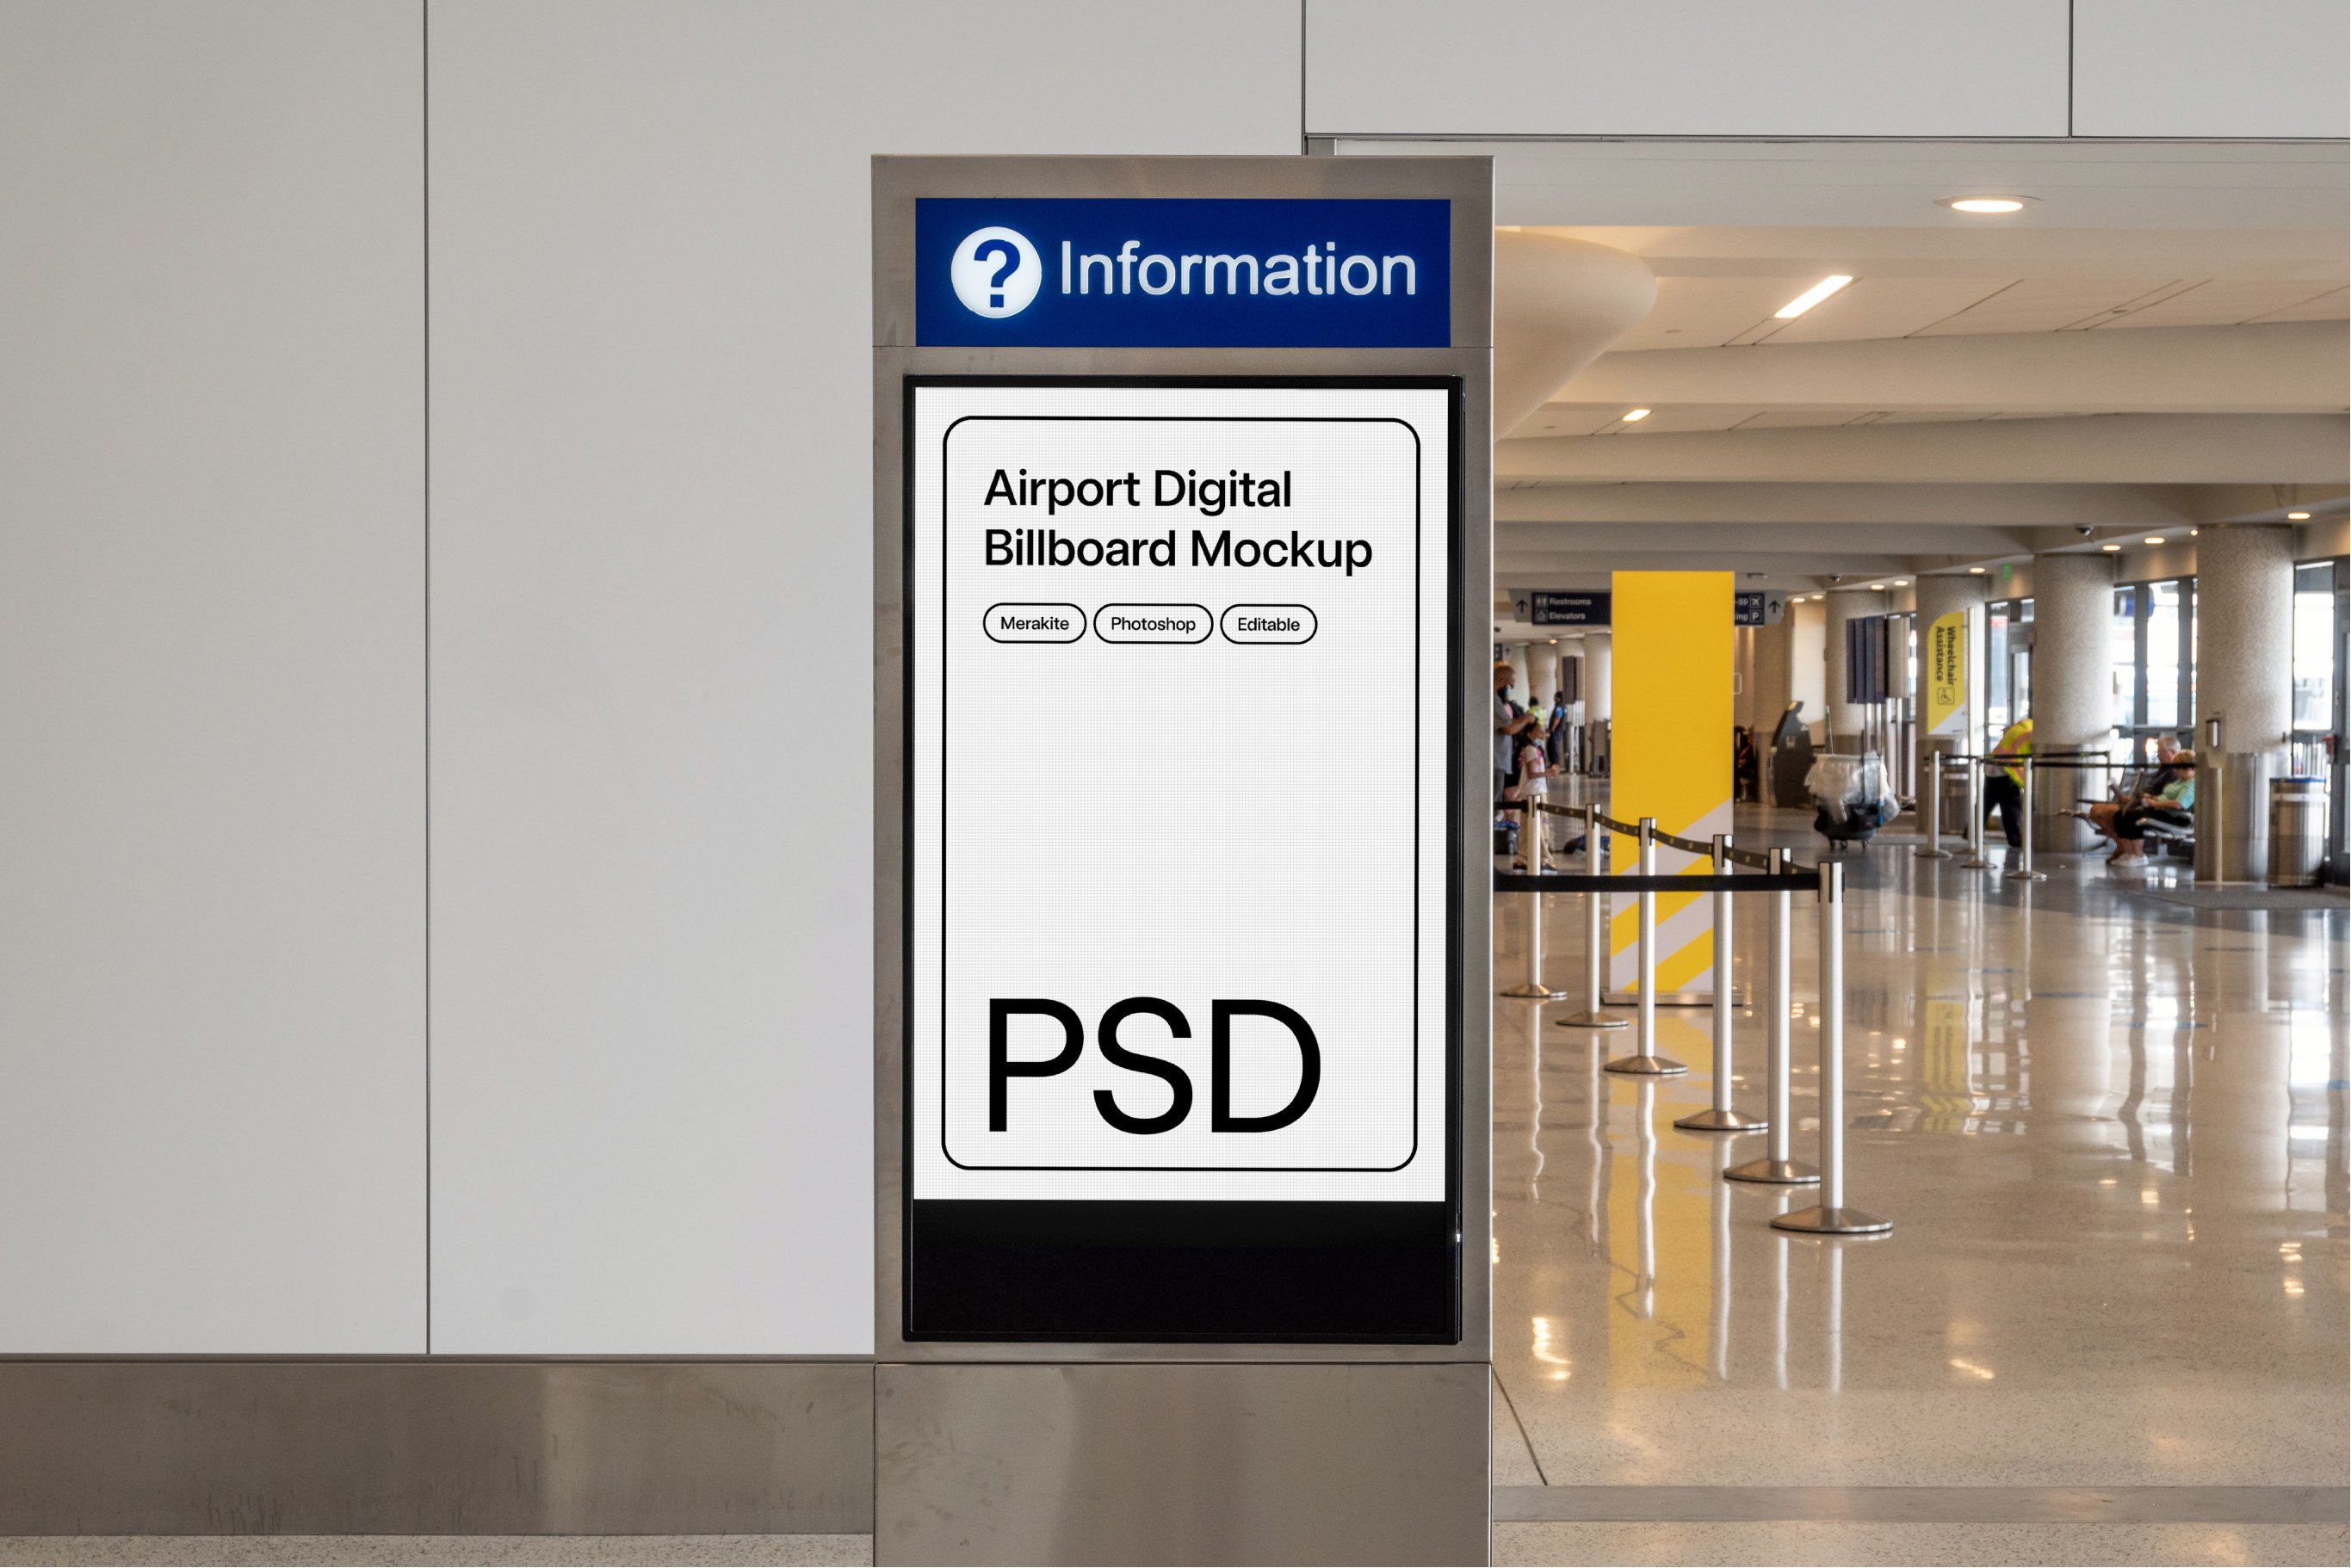 Airport Digital Billboard Mockup PSD cover image.